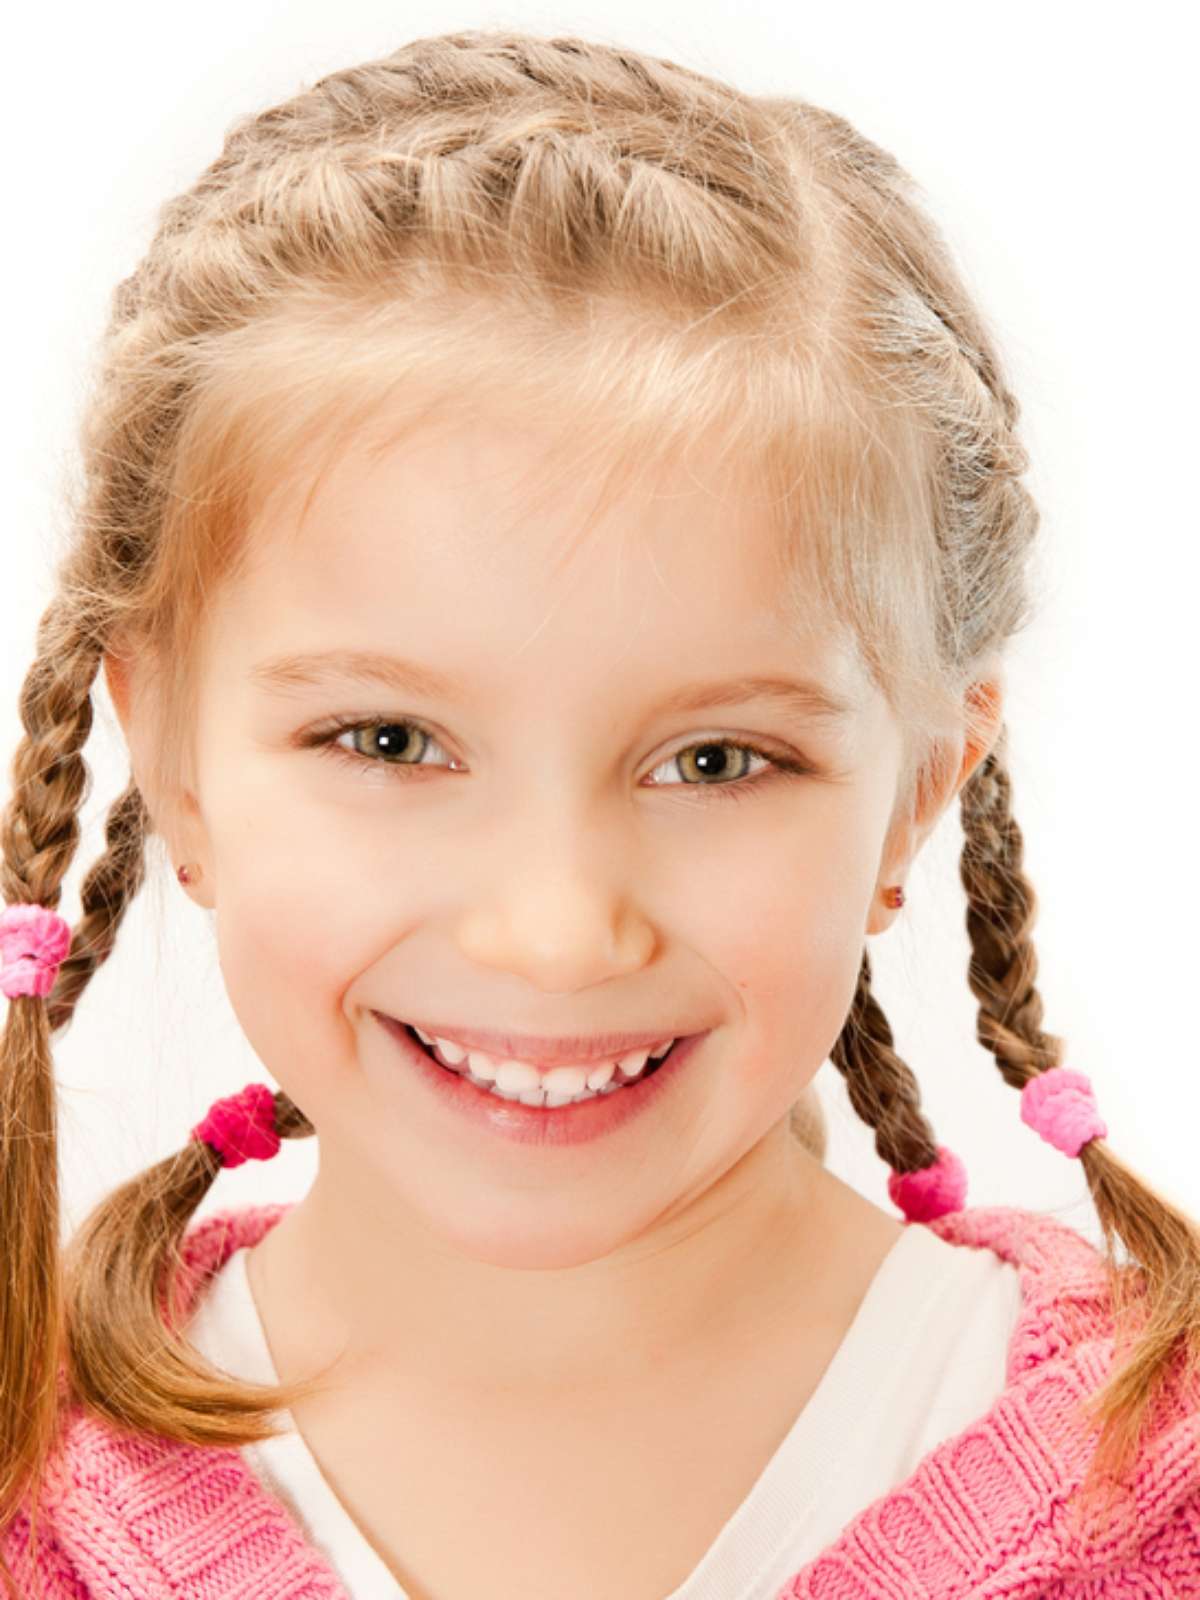 Penteado infantil: 17 opções para meninas - Minha Vida